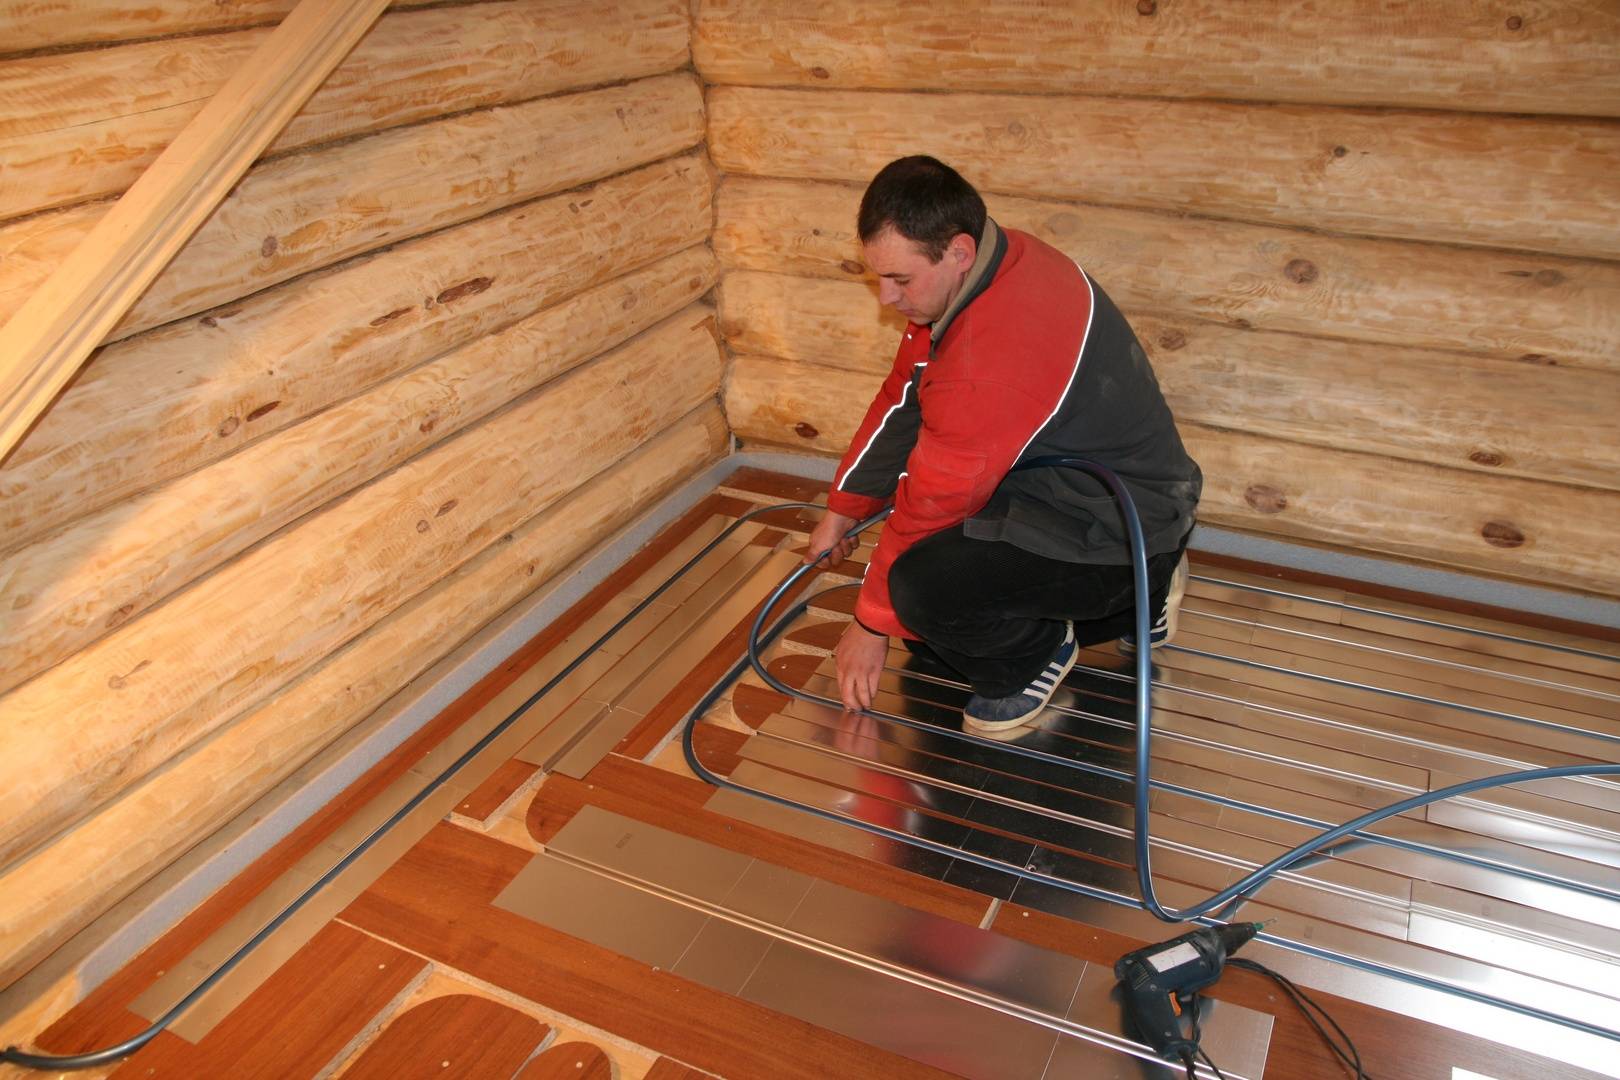 Укладка теплого пода под ламинат в деревянном доме - инструкция